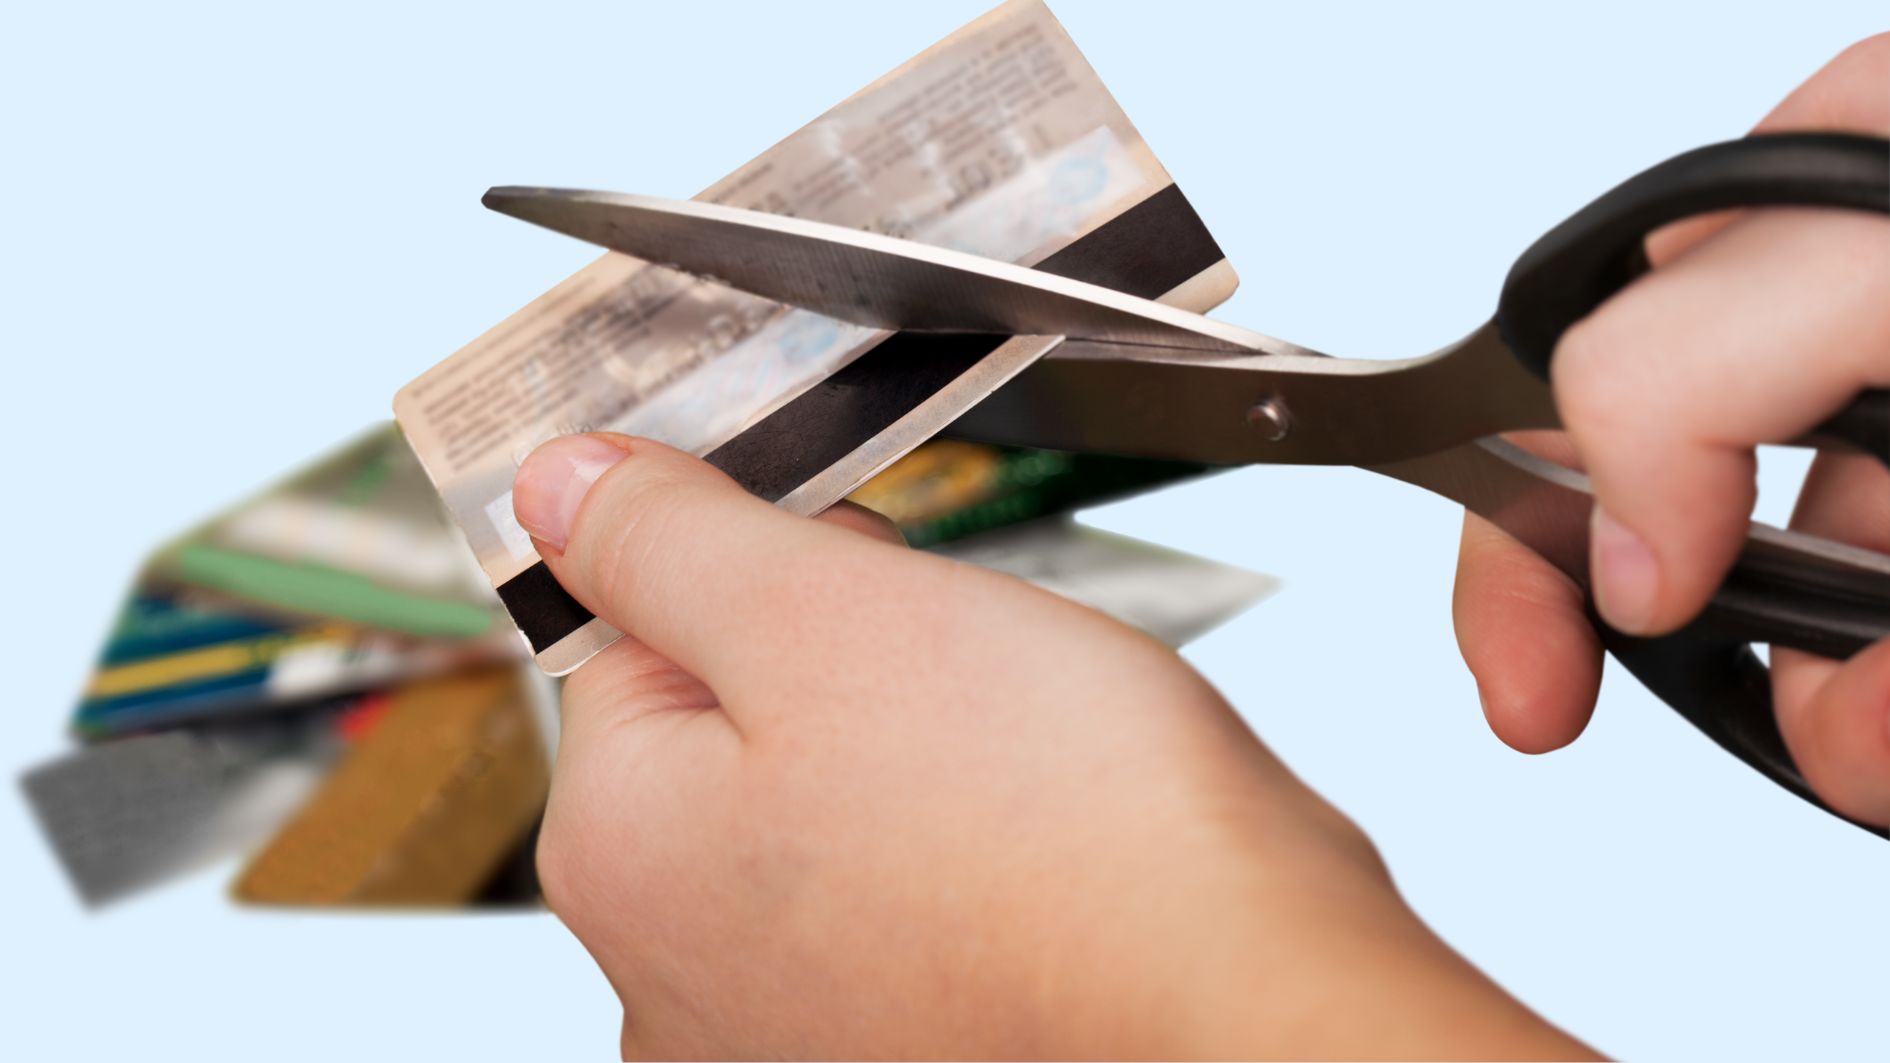 クレジットカードによる衝動買いを防ぐ最も有効な手段は、カードを解約することにある